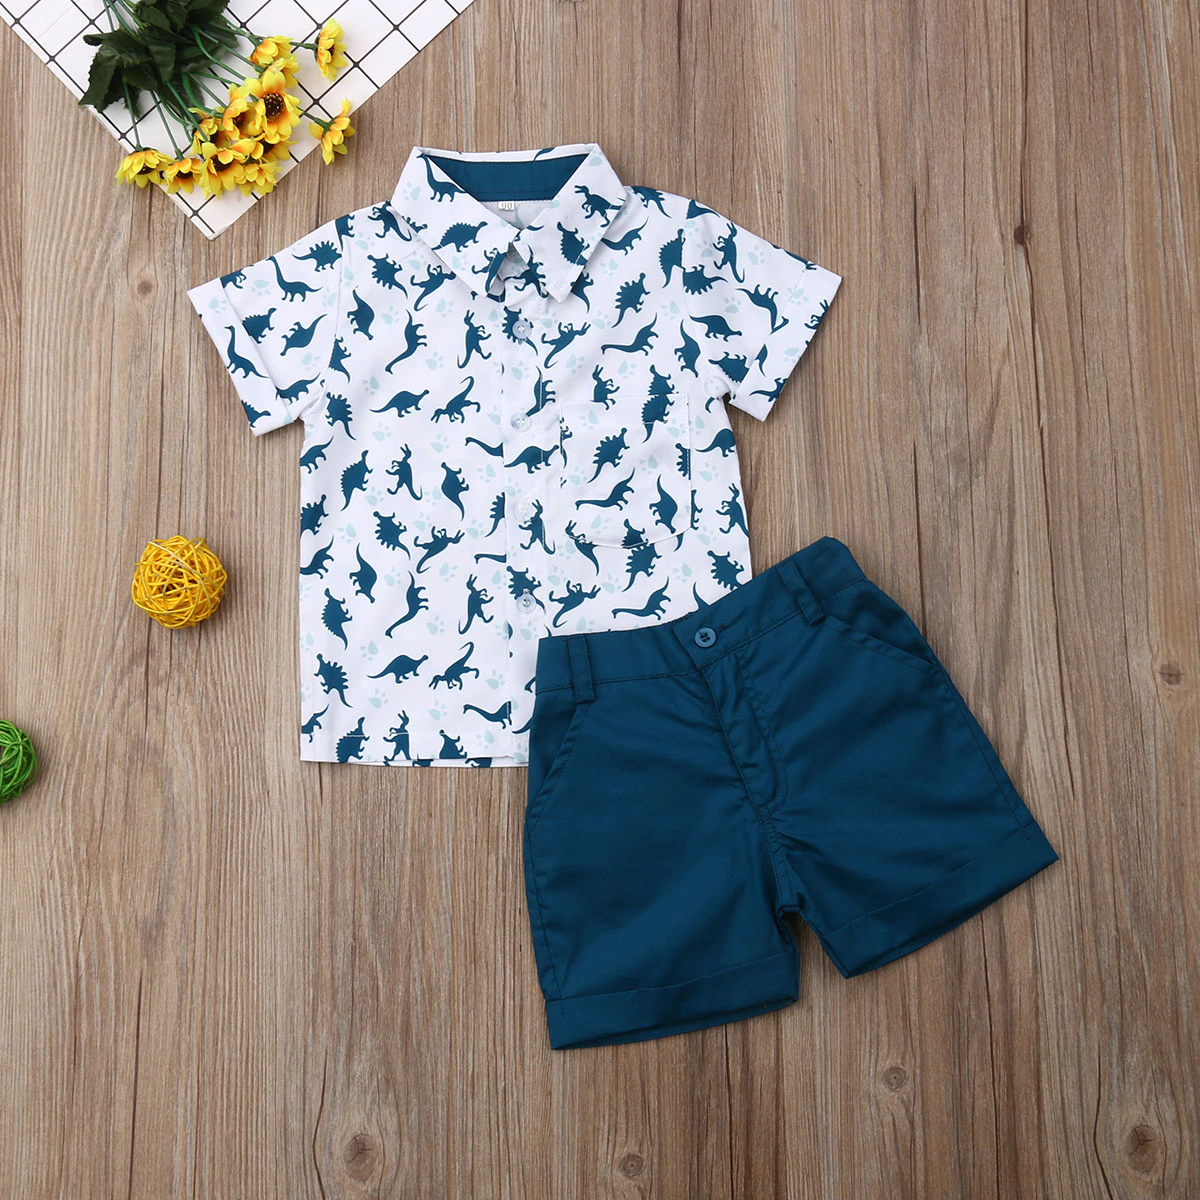 Emmababy Outfits Short-Pants Shirt Dinosaur Summer Toddler Casual 2pcs Tops Print